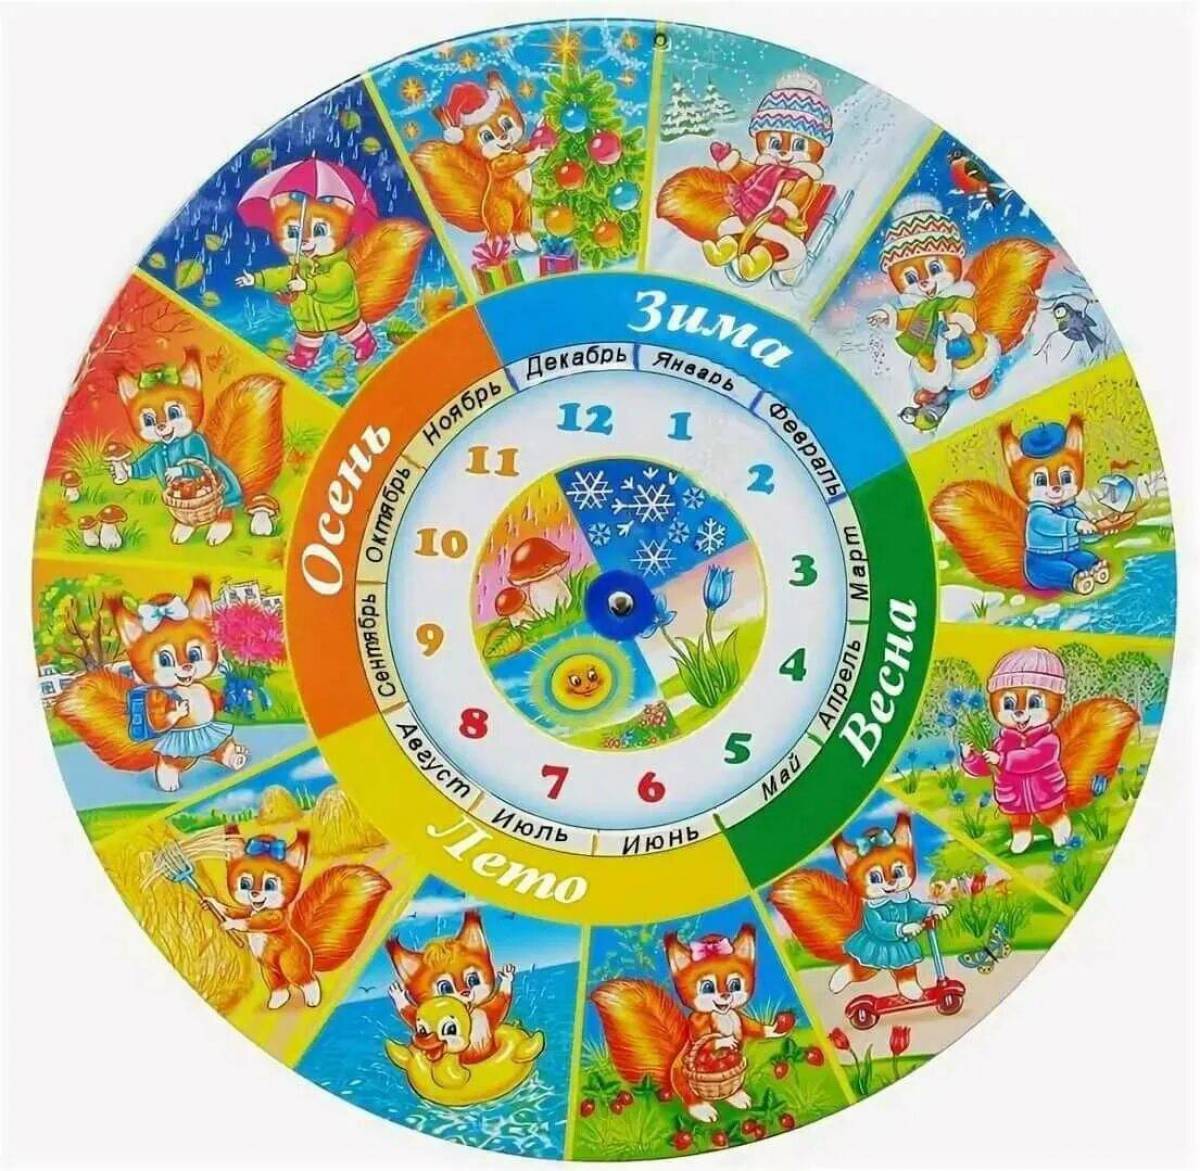 Круги дни недели. Календарь времена года. Круглый календарь для детей. Изображения времен года для детей. Календарь времен года для детского сада.